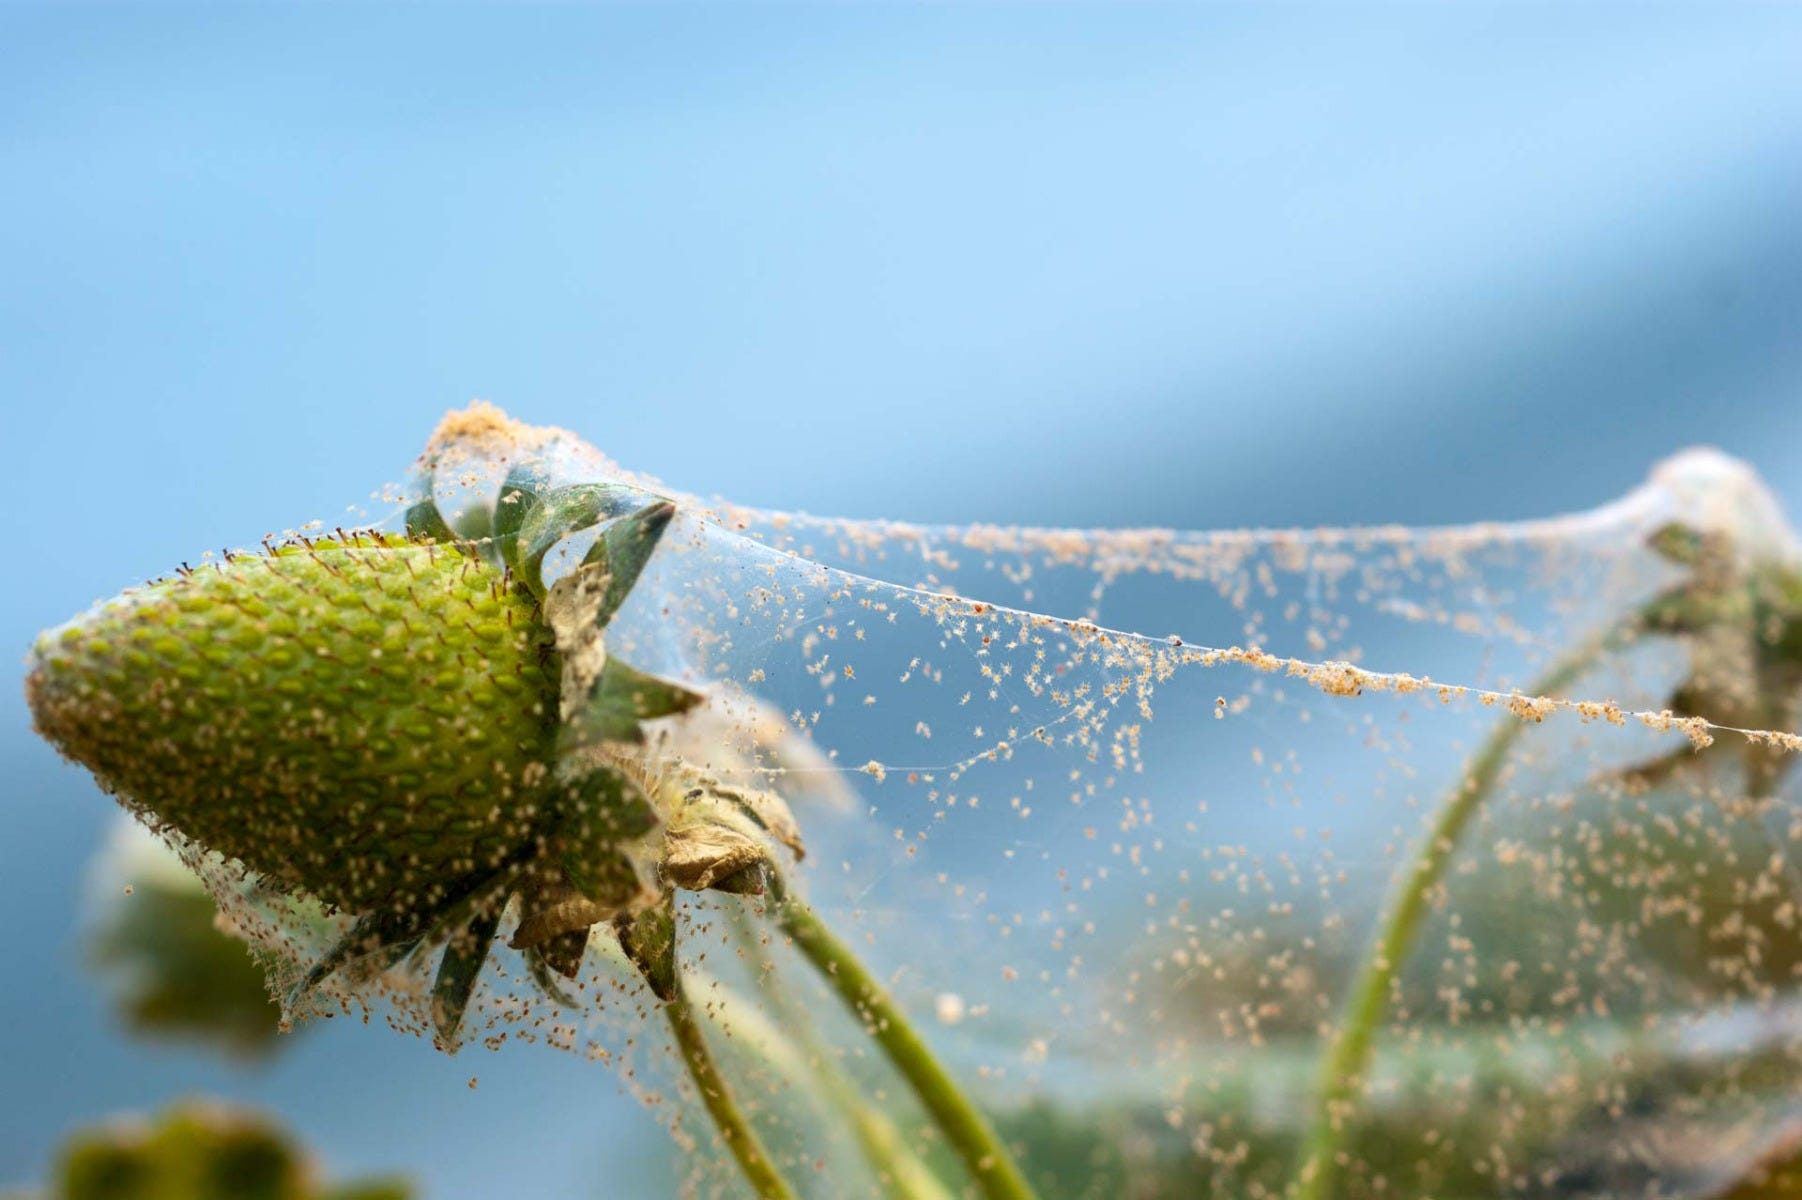 Spider mite web on plant